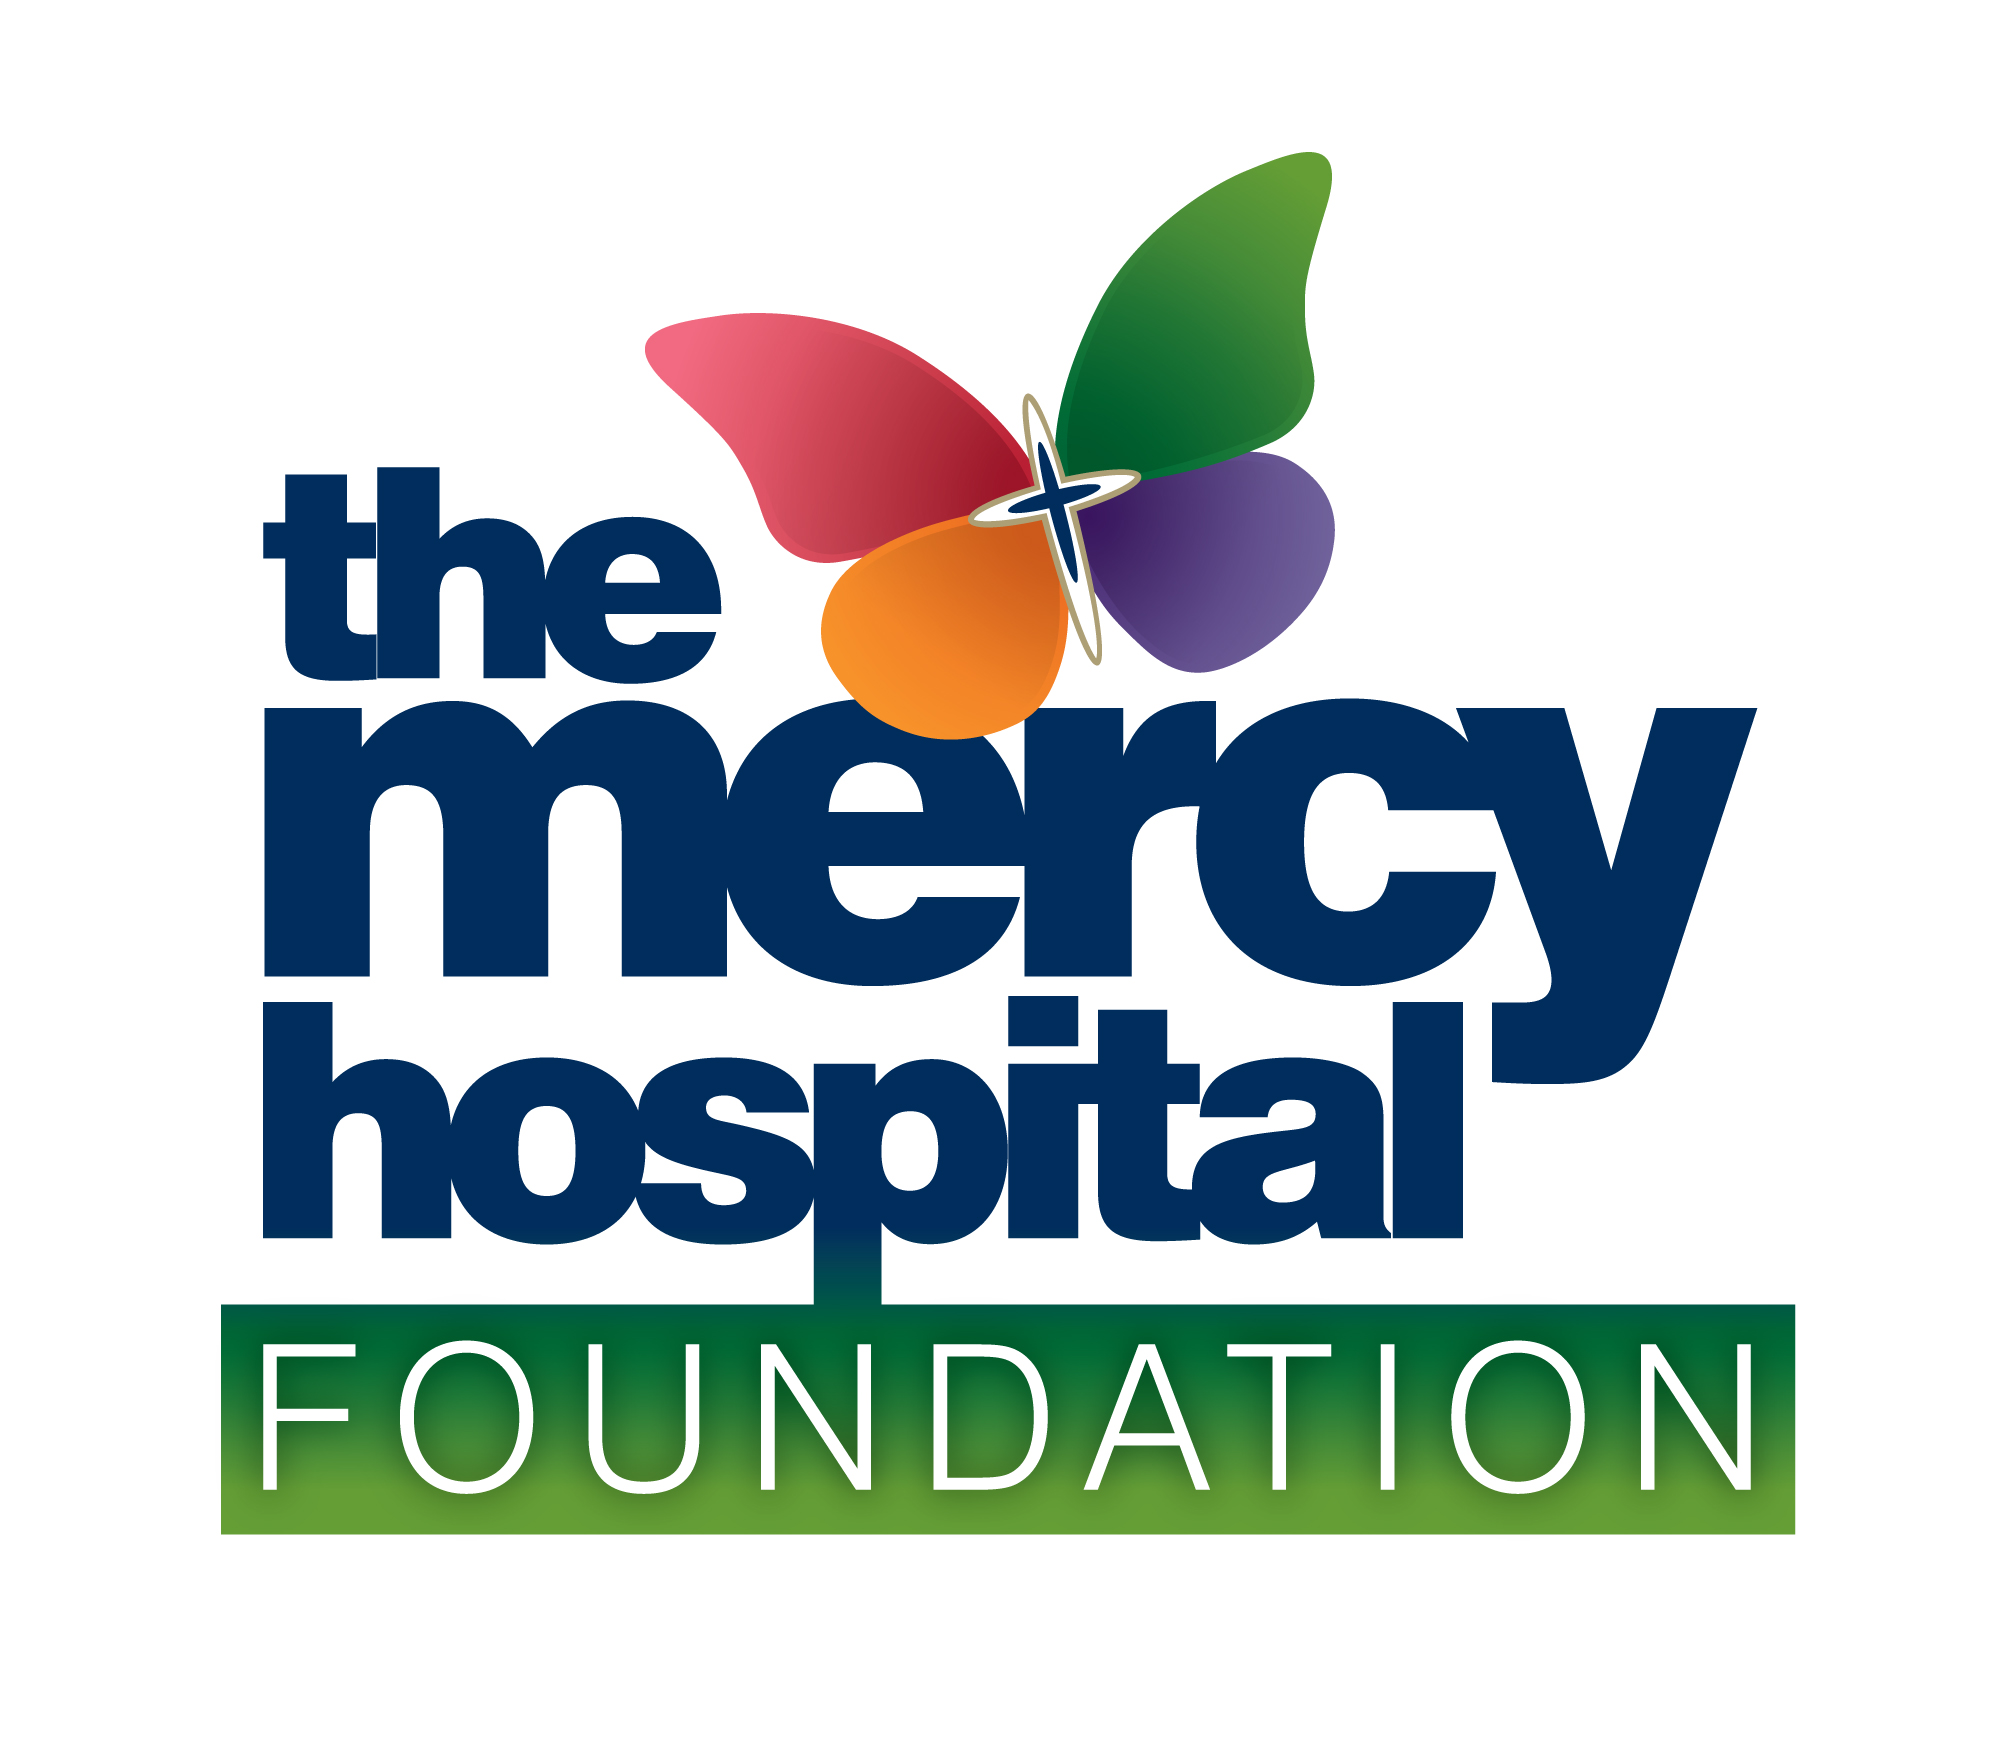 Mercy University Hospital Foundation